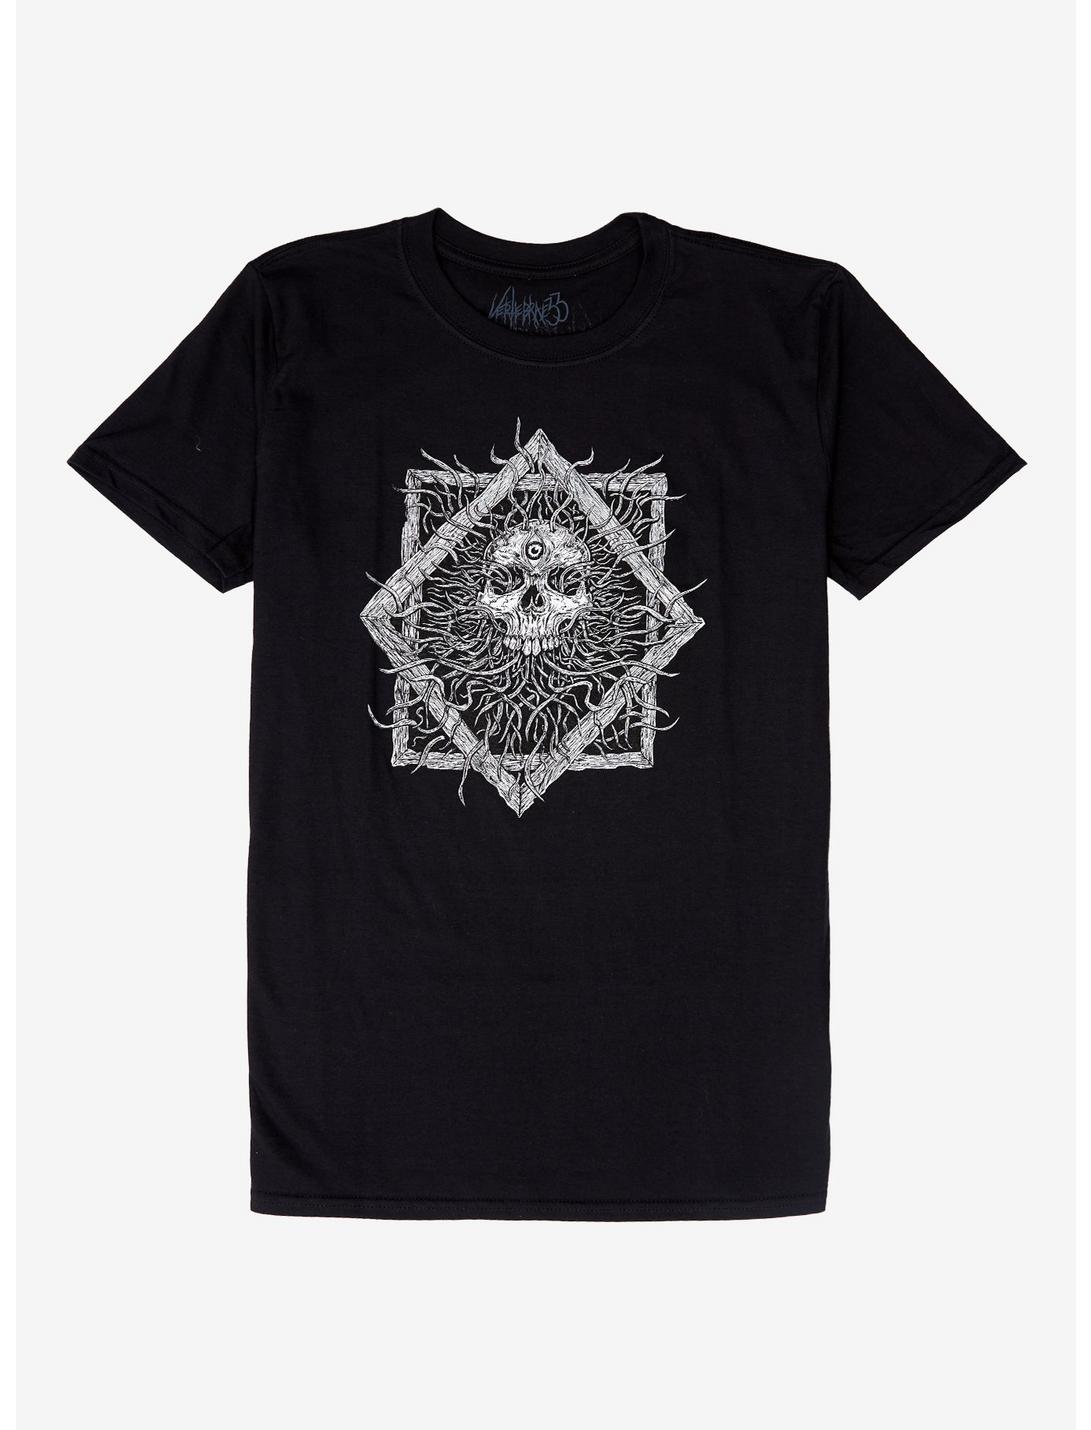 Tentacle Skull Frame T-Shirt By Vertebrae33, WHITE, hi-res